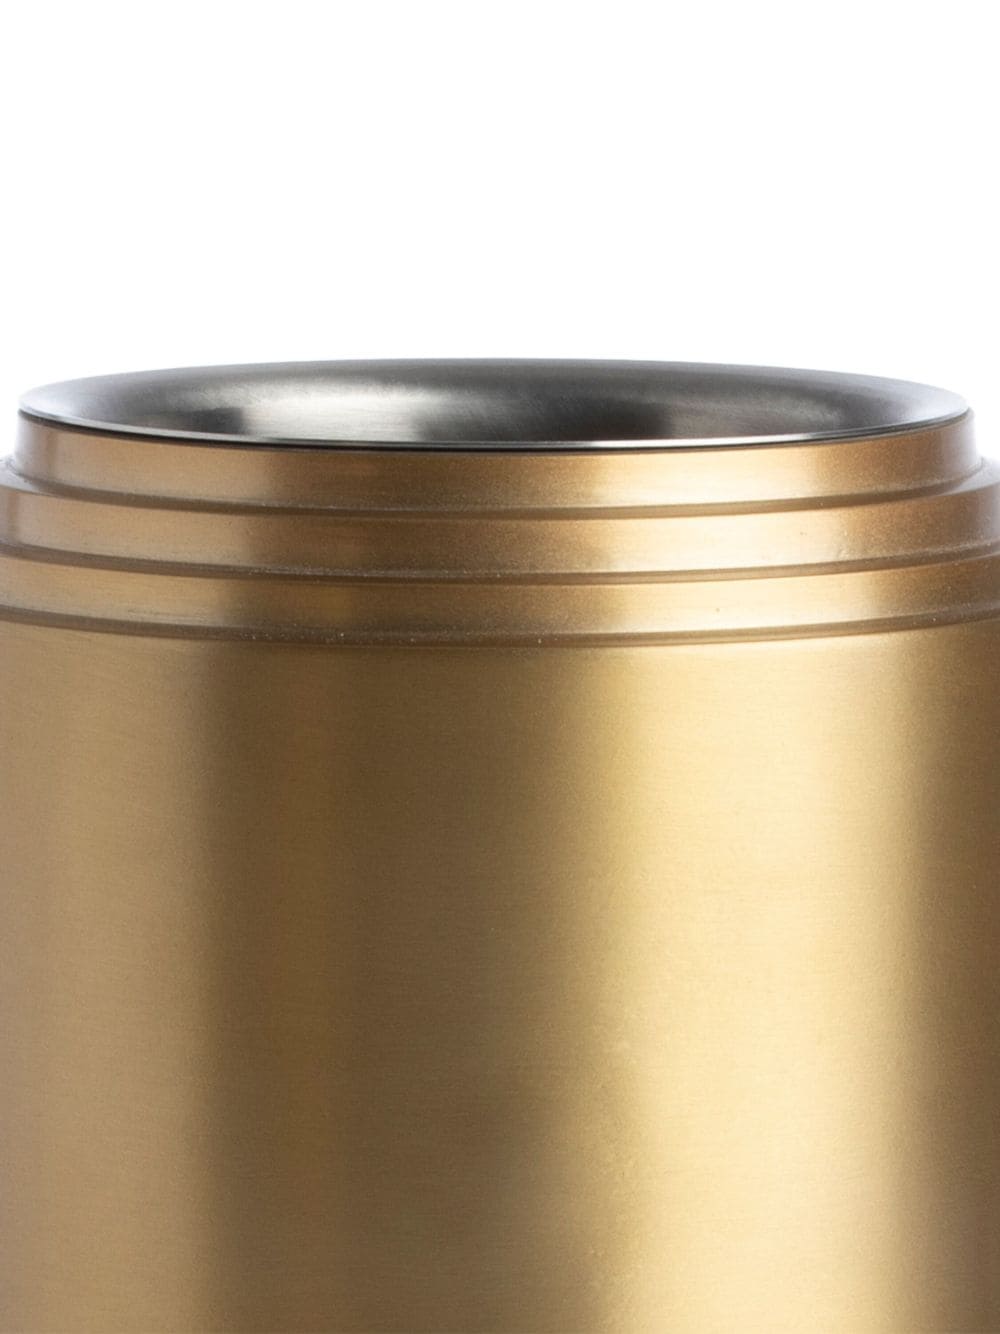 XLBoom Laps aluminium wine cooler (19.5cm x 14cm) - Goud